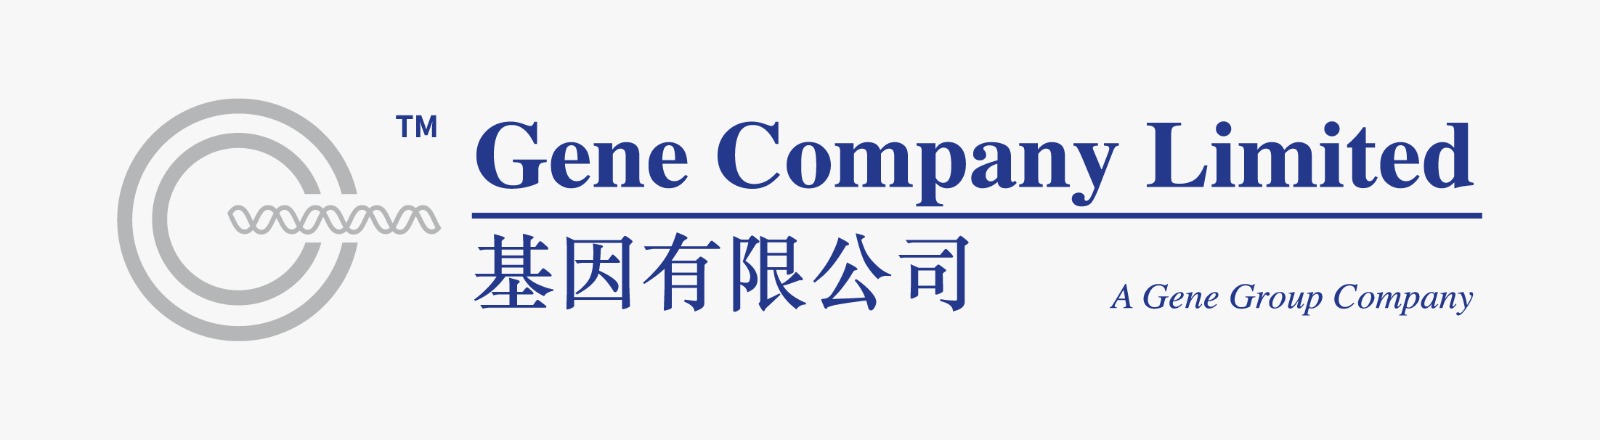 Gene Company logo